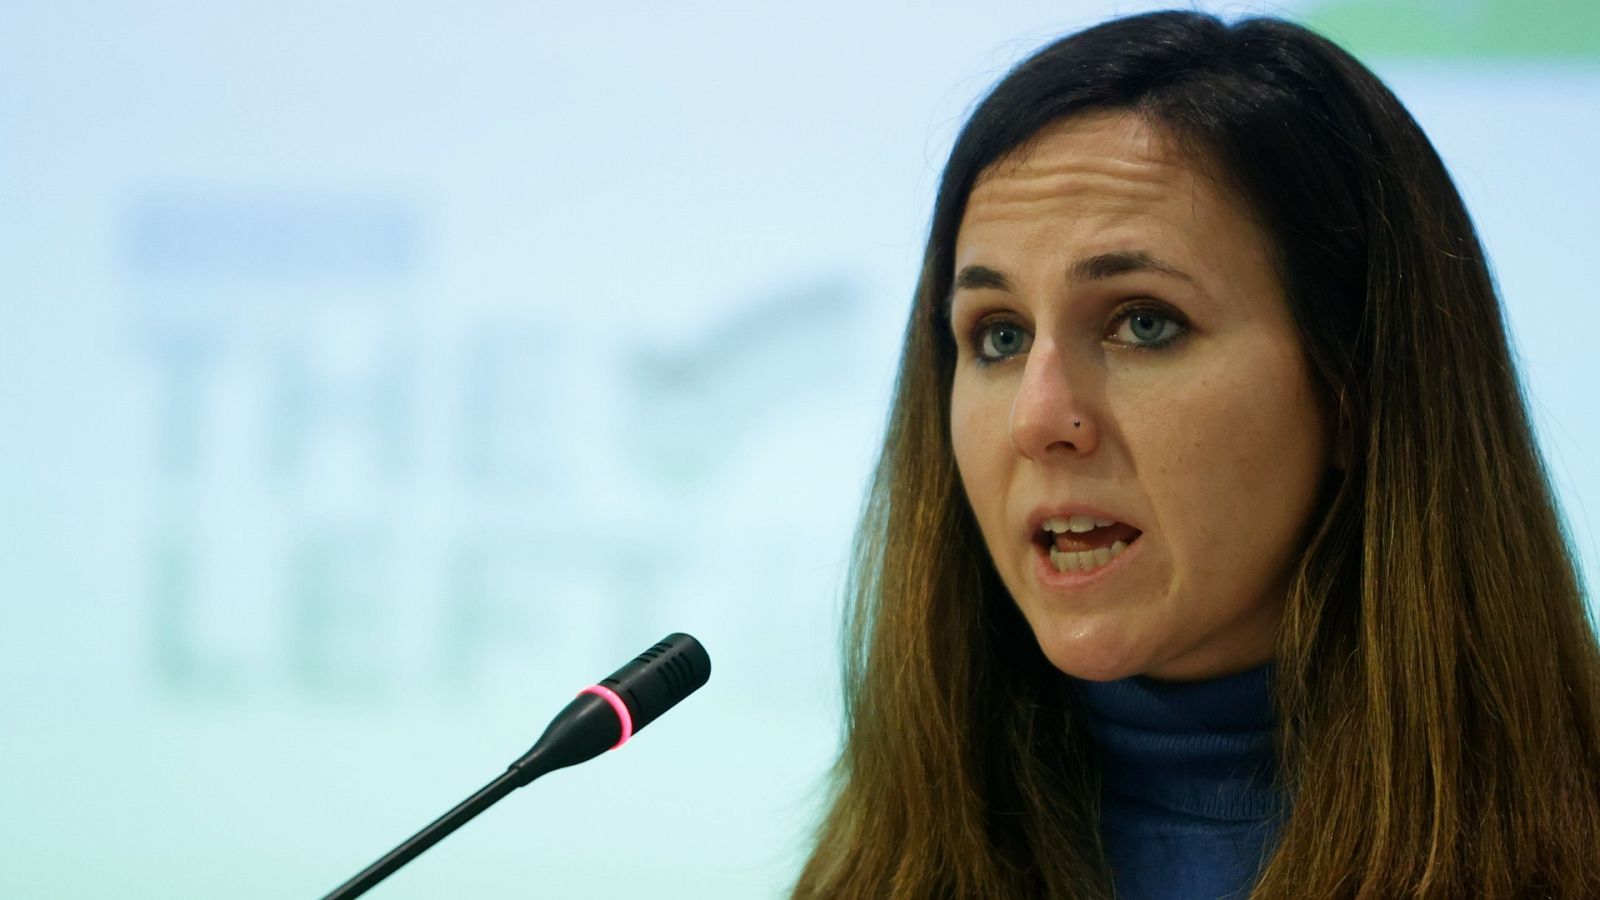 La ministra de Derechos Sociales, Ione Belarra